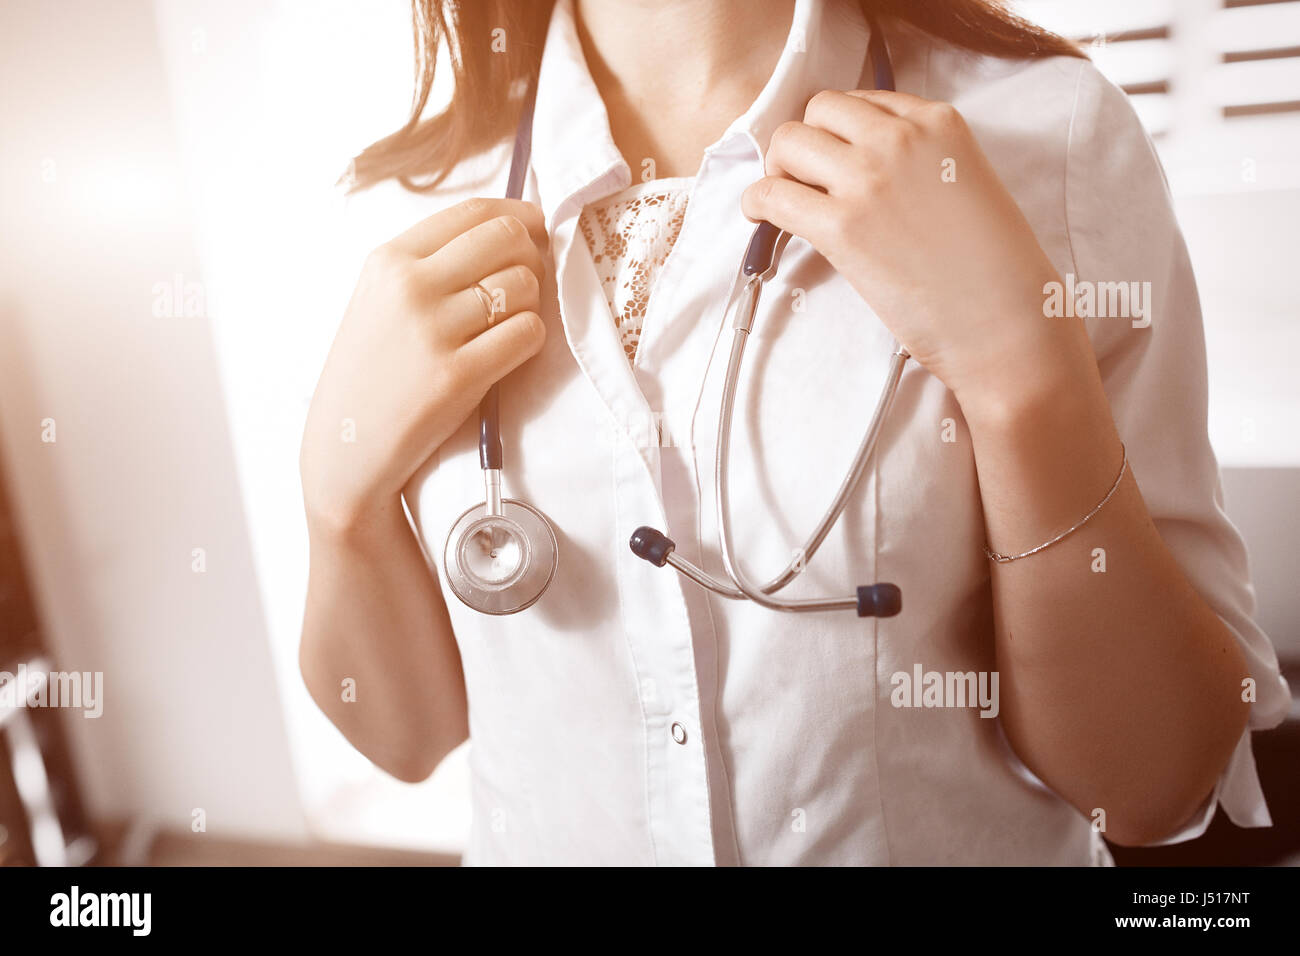 Une jeune femme médecin dans un smock blanc tenant un stéthoscope dans les bras sur le cou. Arrière-plan flou. Concept de l'aide médicale. Banque D'Images